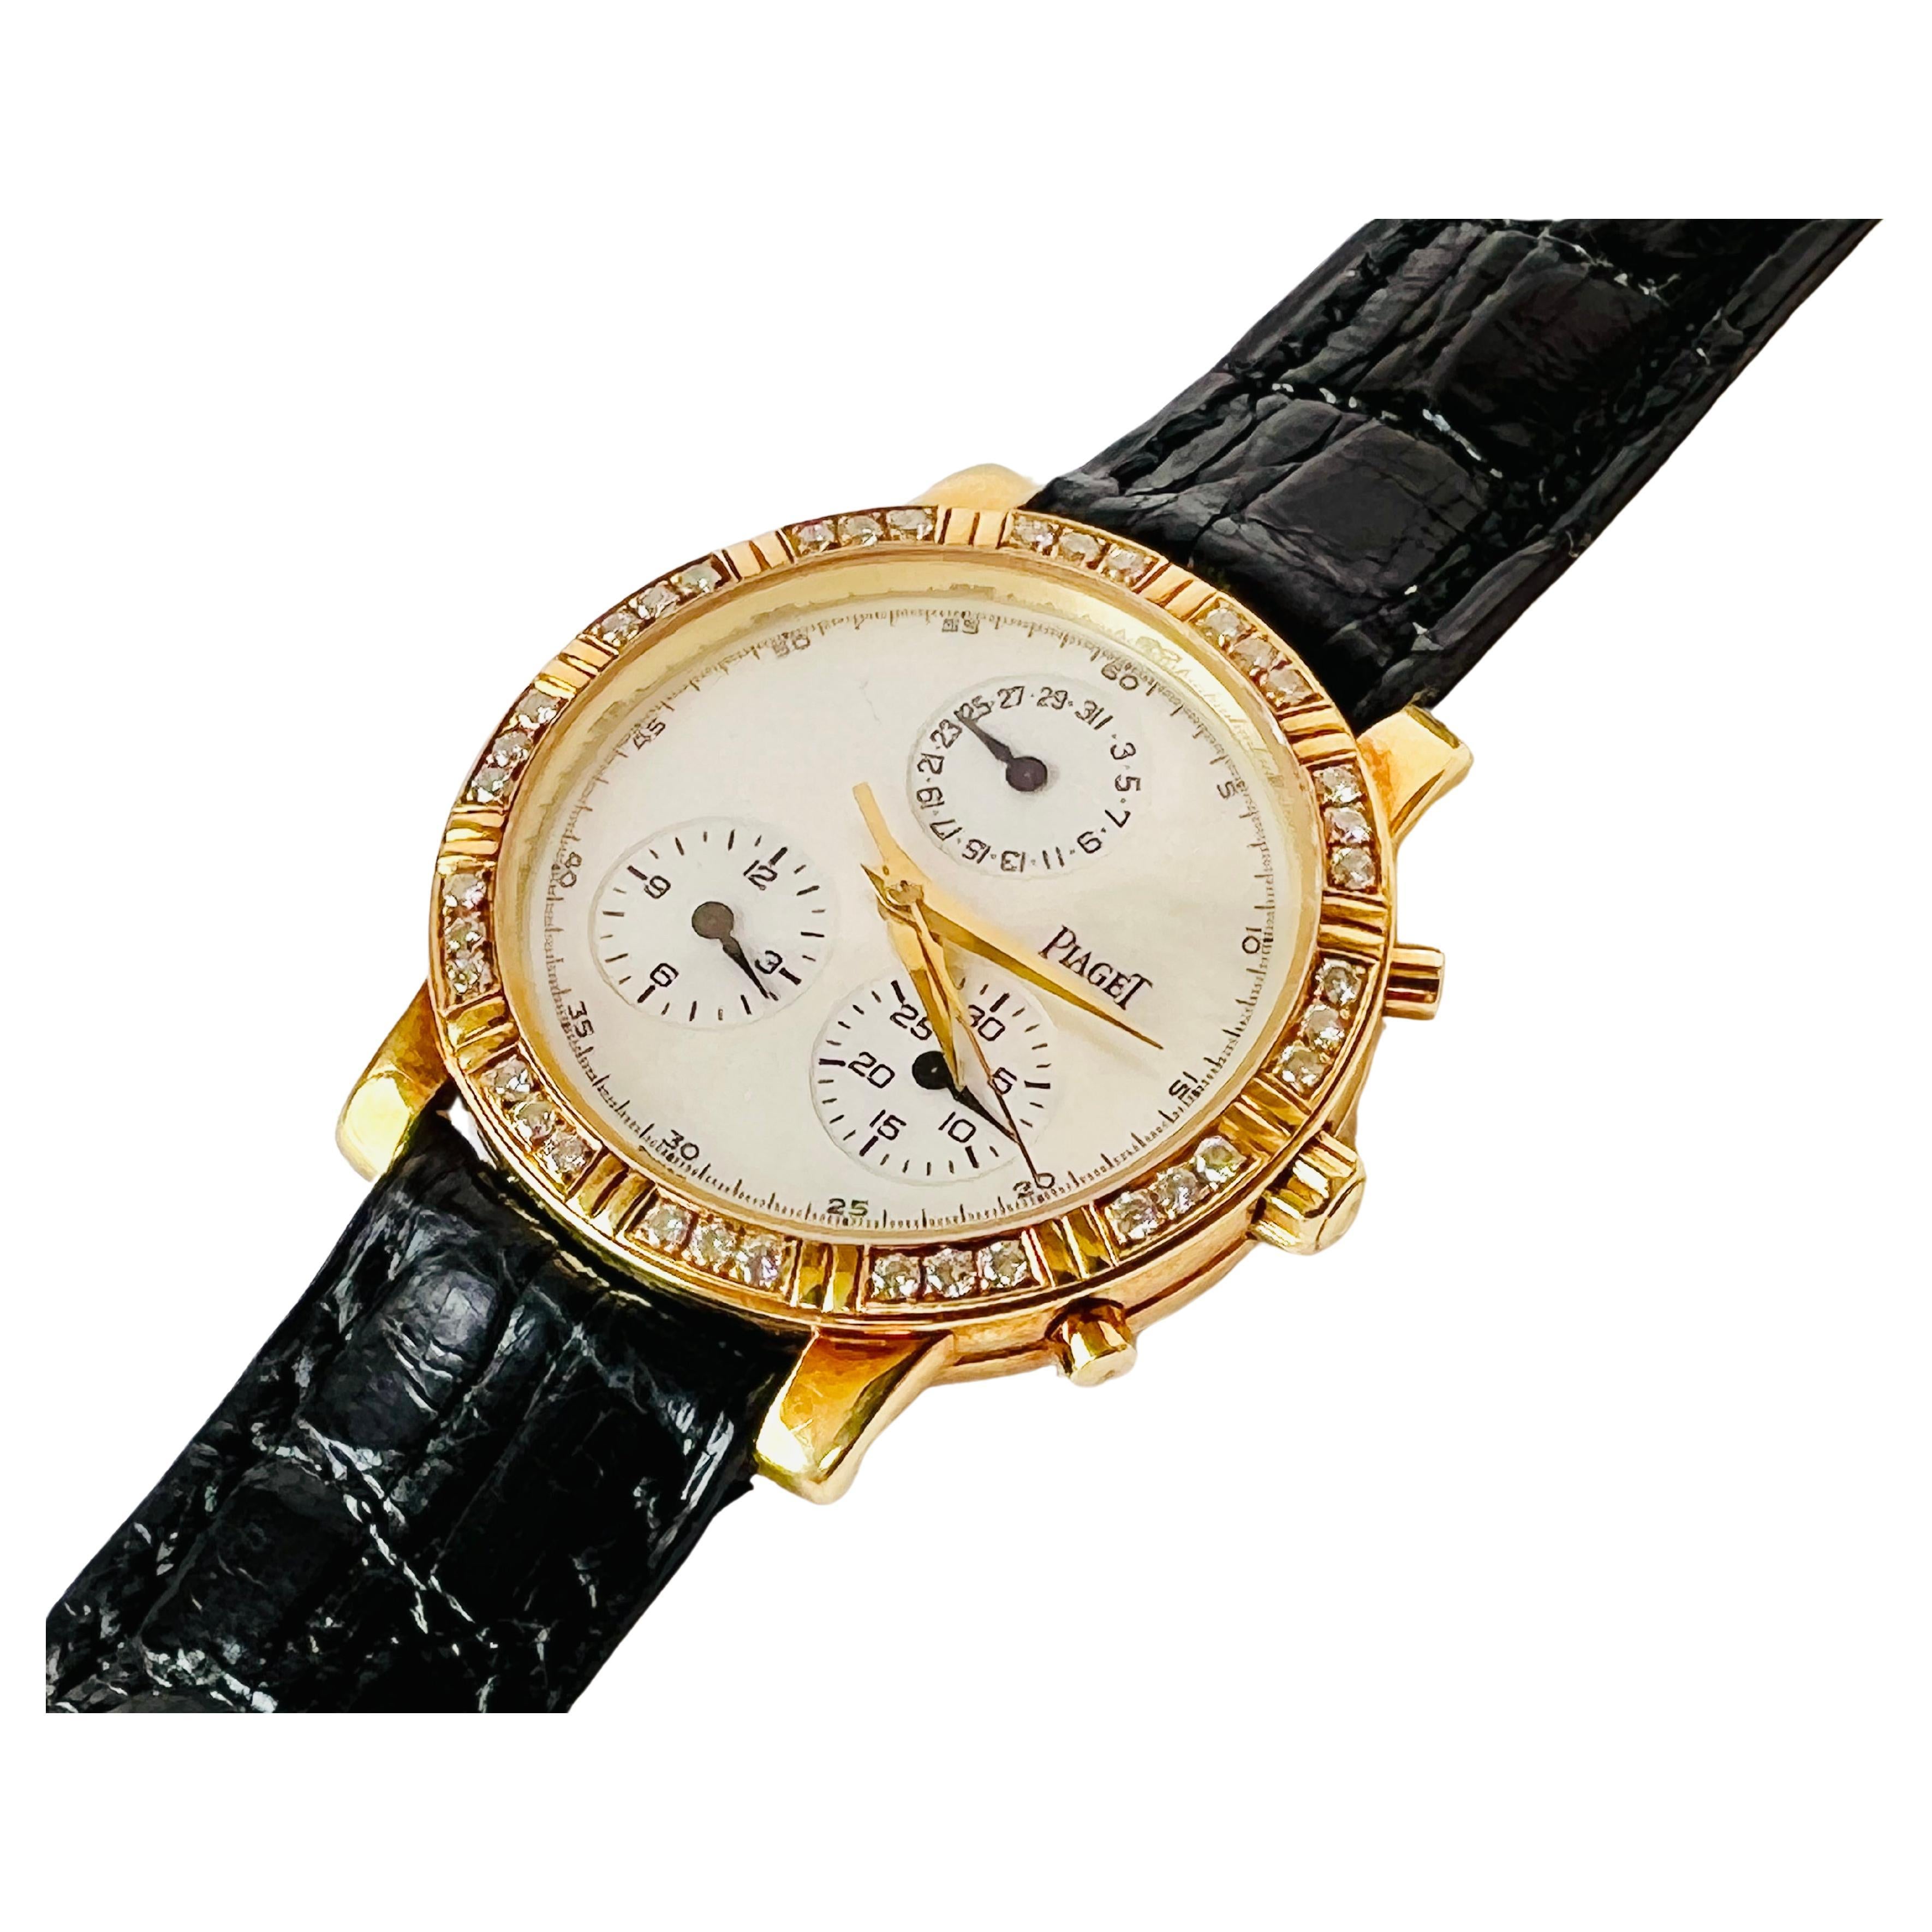 Piaget Haute Complication Montre chronographe 14013 avec cadran MOP en or 18 carats et diamants